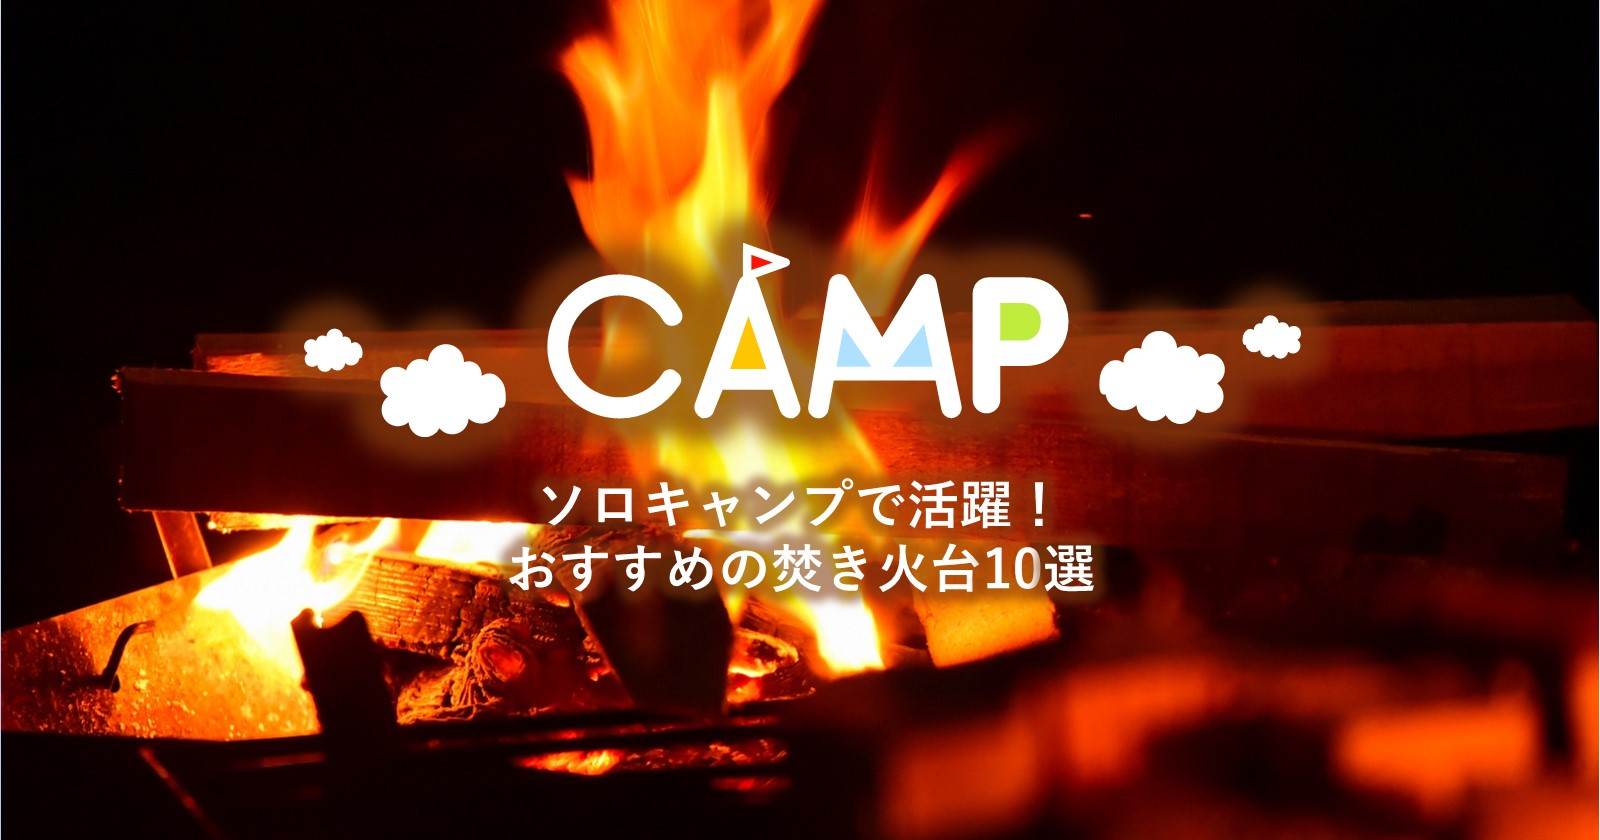 ソロキャンプで活躍 おしゃれ コンパクト コスパ良し おすすめ焚き火台10選 キャンプ アウトドアのtakibi タキビ